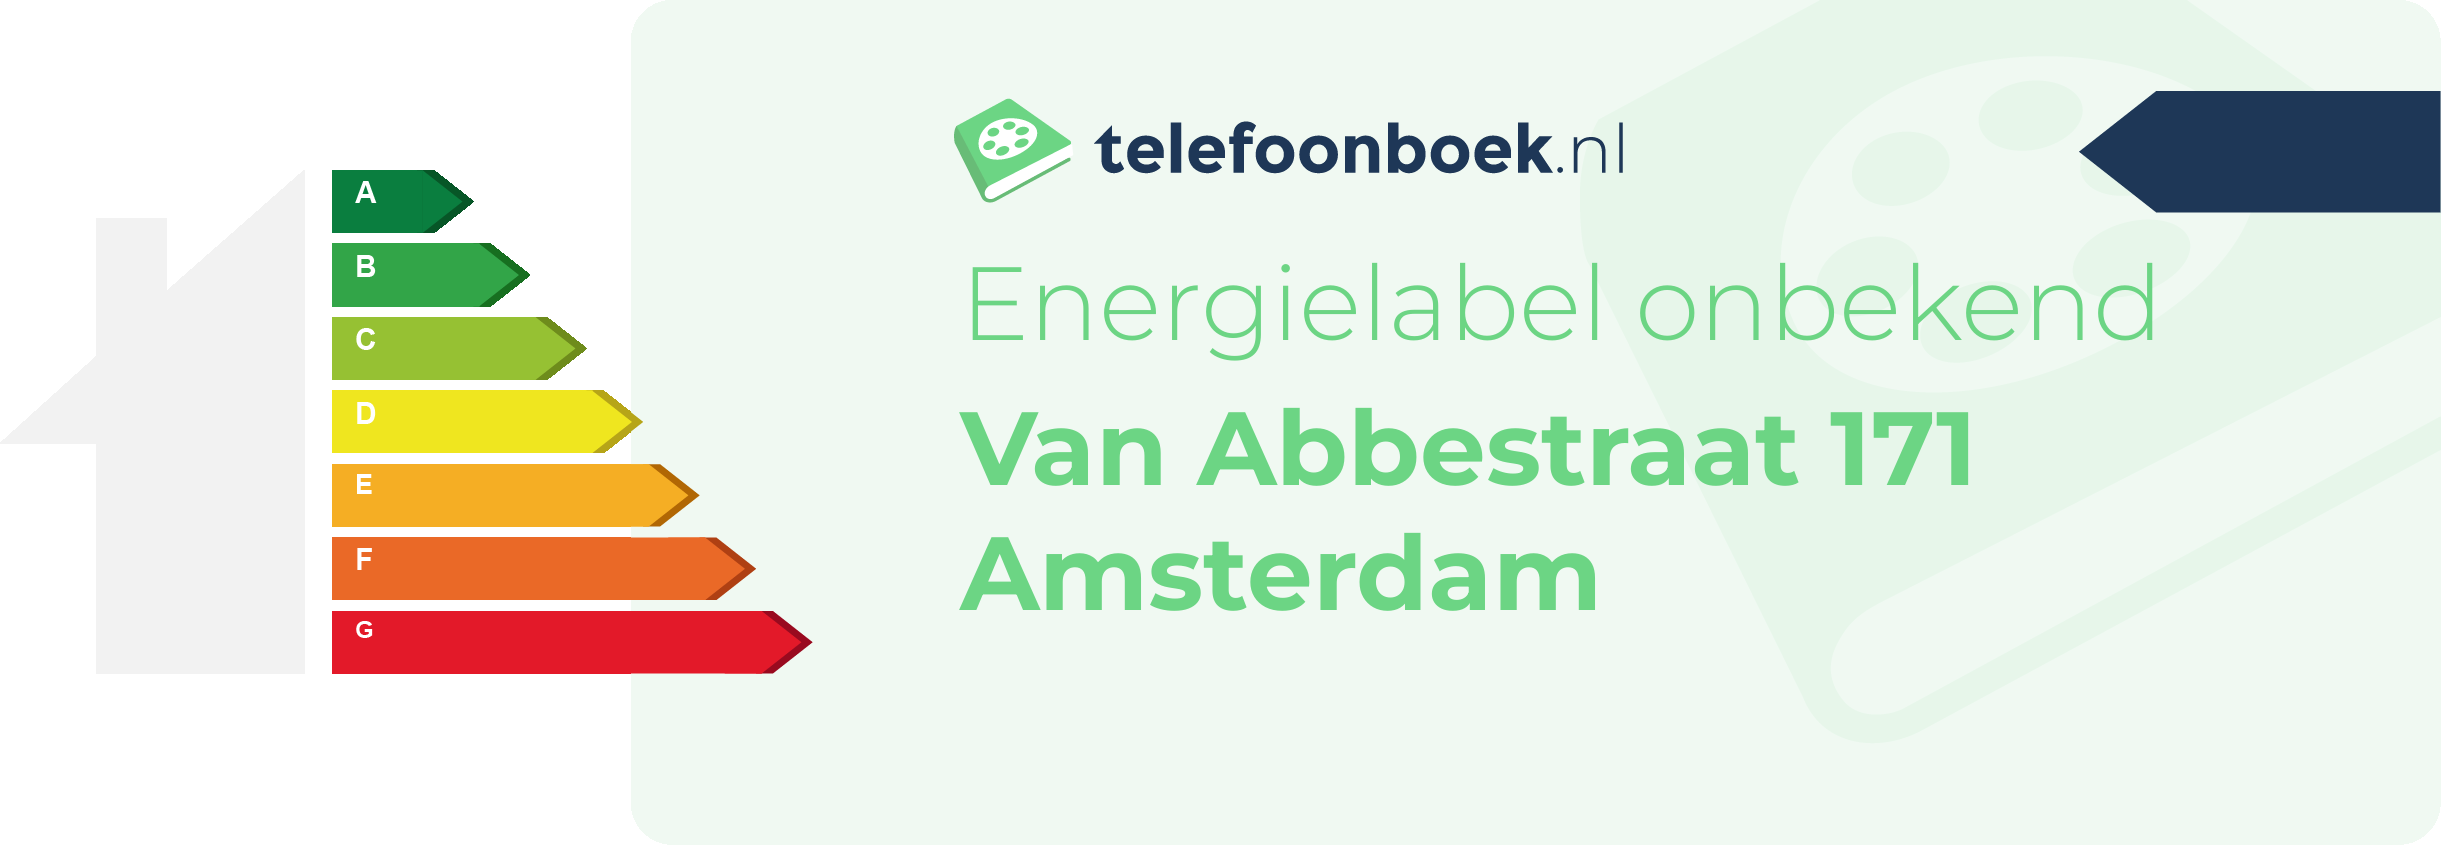 Energielabel Van Abbestraat 171 Amsterdam